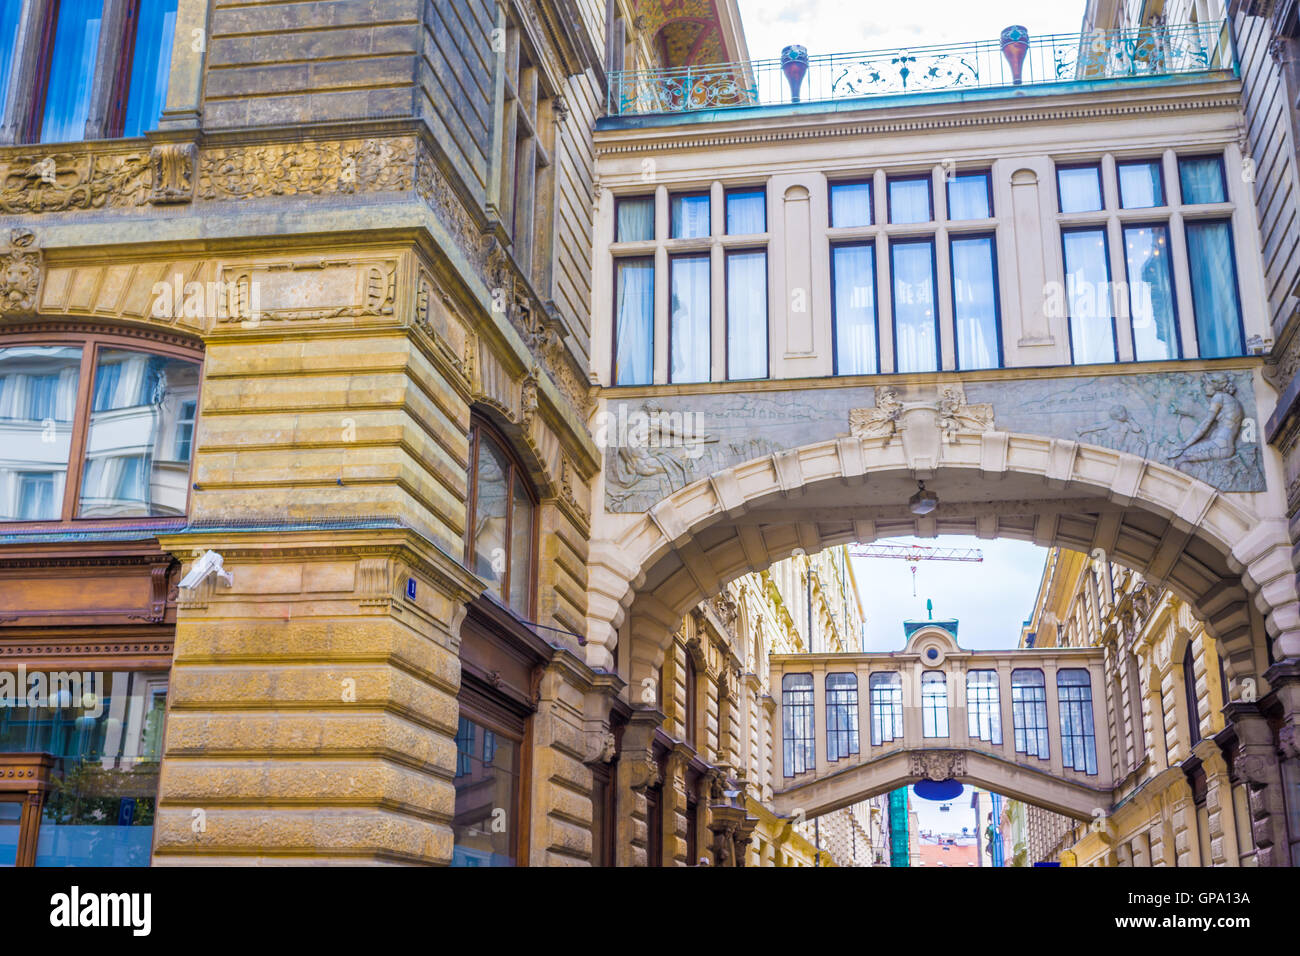 Prague est la capitale de la République tchèque. C'est la plus grande ville du pays et a fondé au cours de l'époque romane. Banque D'Images